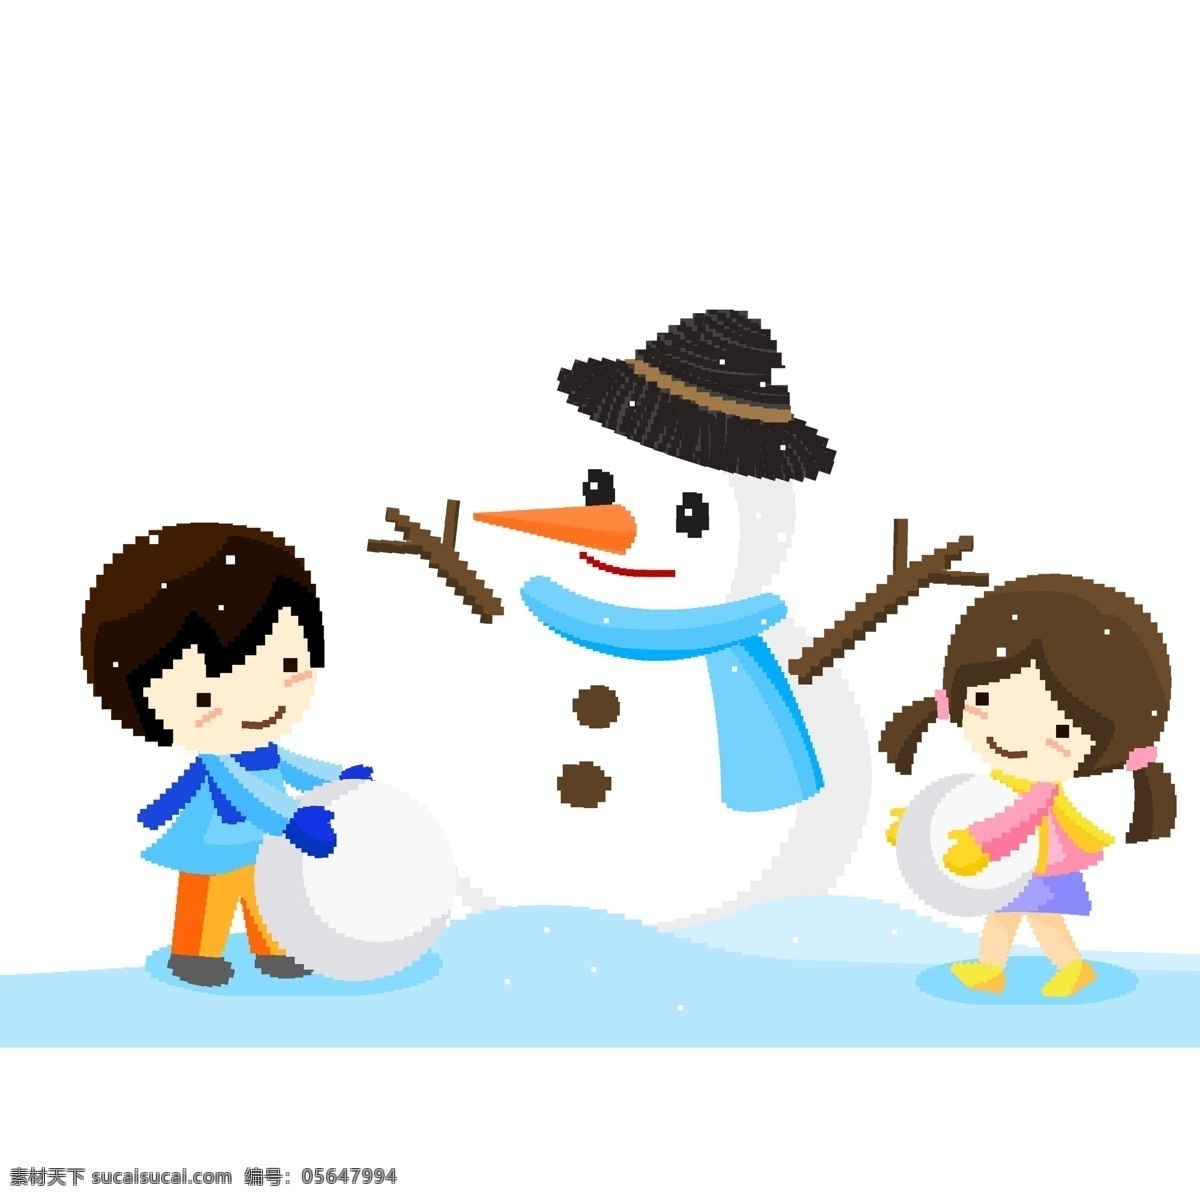 清新 大雪 中 堆 雪人 姐弟 俩 像素 化 卡通 女孩 小孩 雪花 手绘 堆雪人场景 滚雪球 男孩 雪地